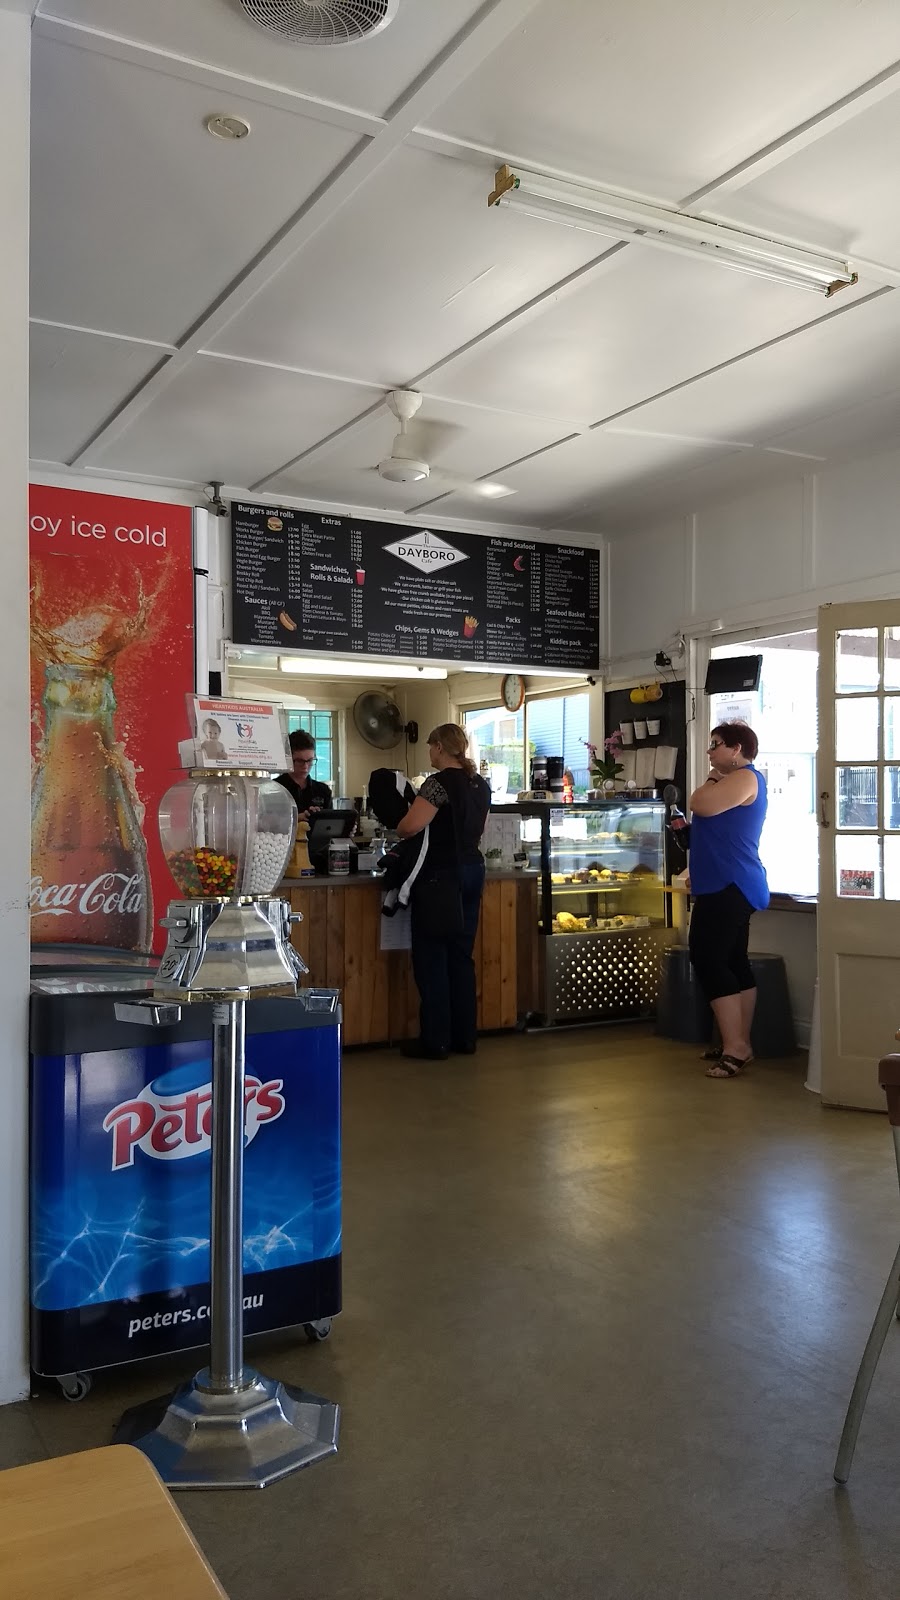 Dayboro Cafe | cafe | 6 Williams St, Dayboro QLD 4521, Australia | 0734252662 OR +61 7 3425 2662